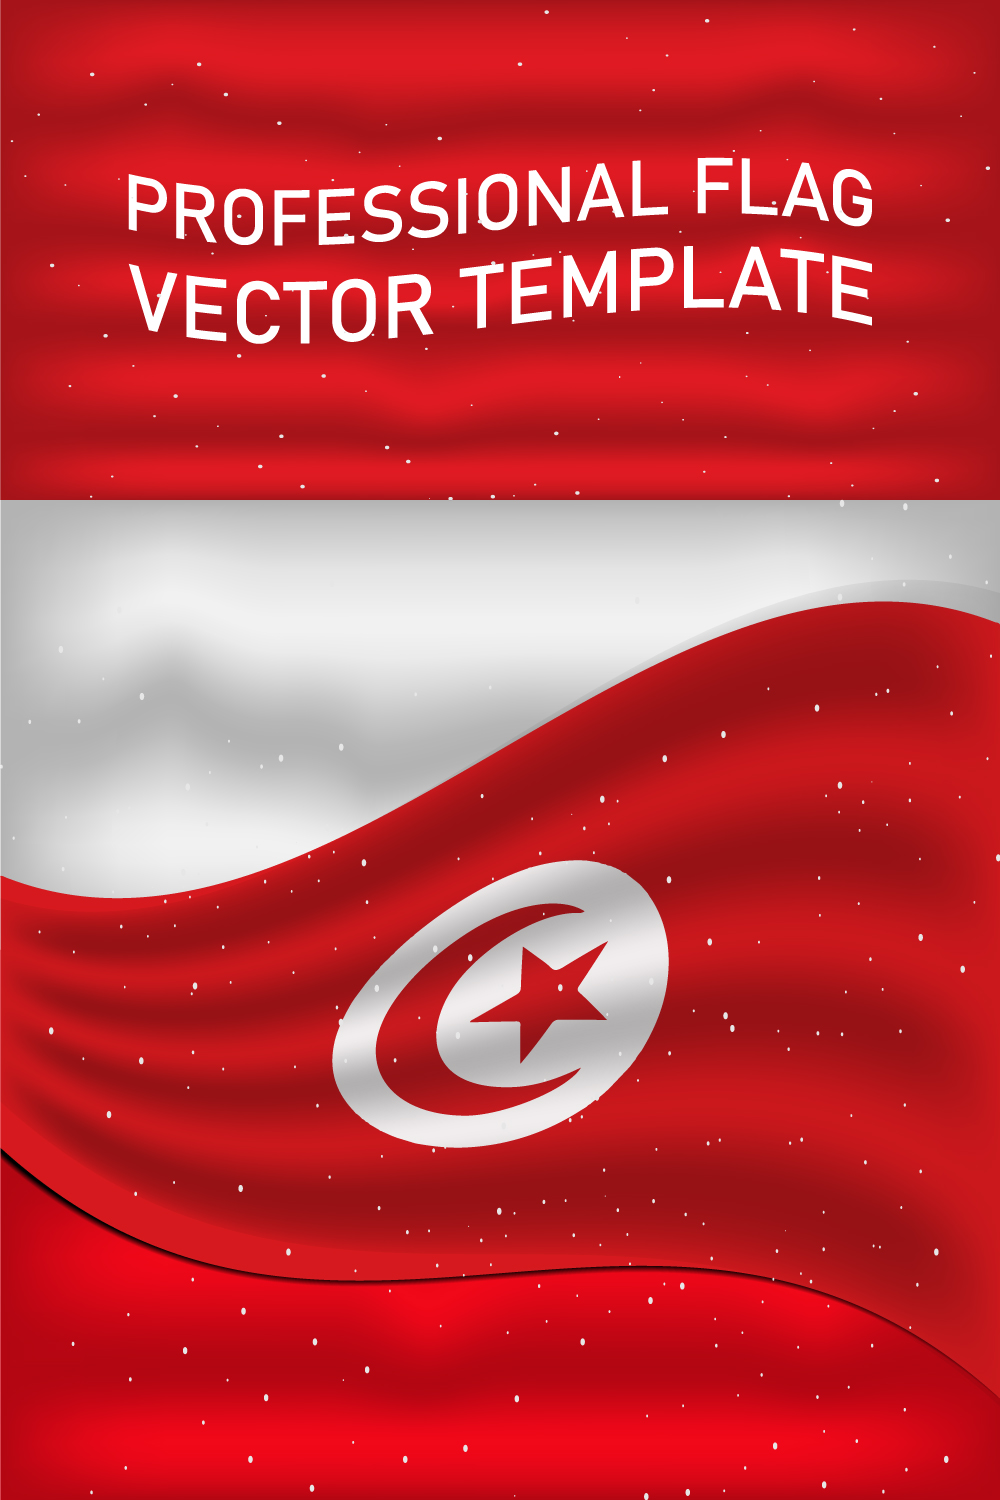 Unique image of the flag of Tunisia.